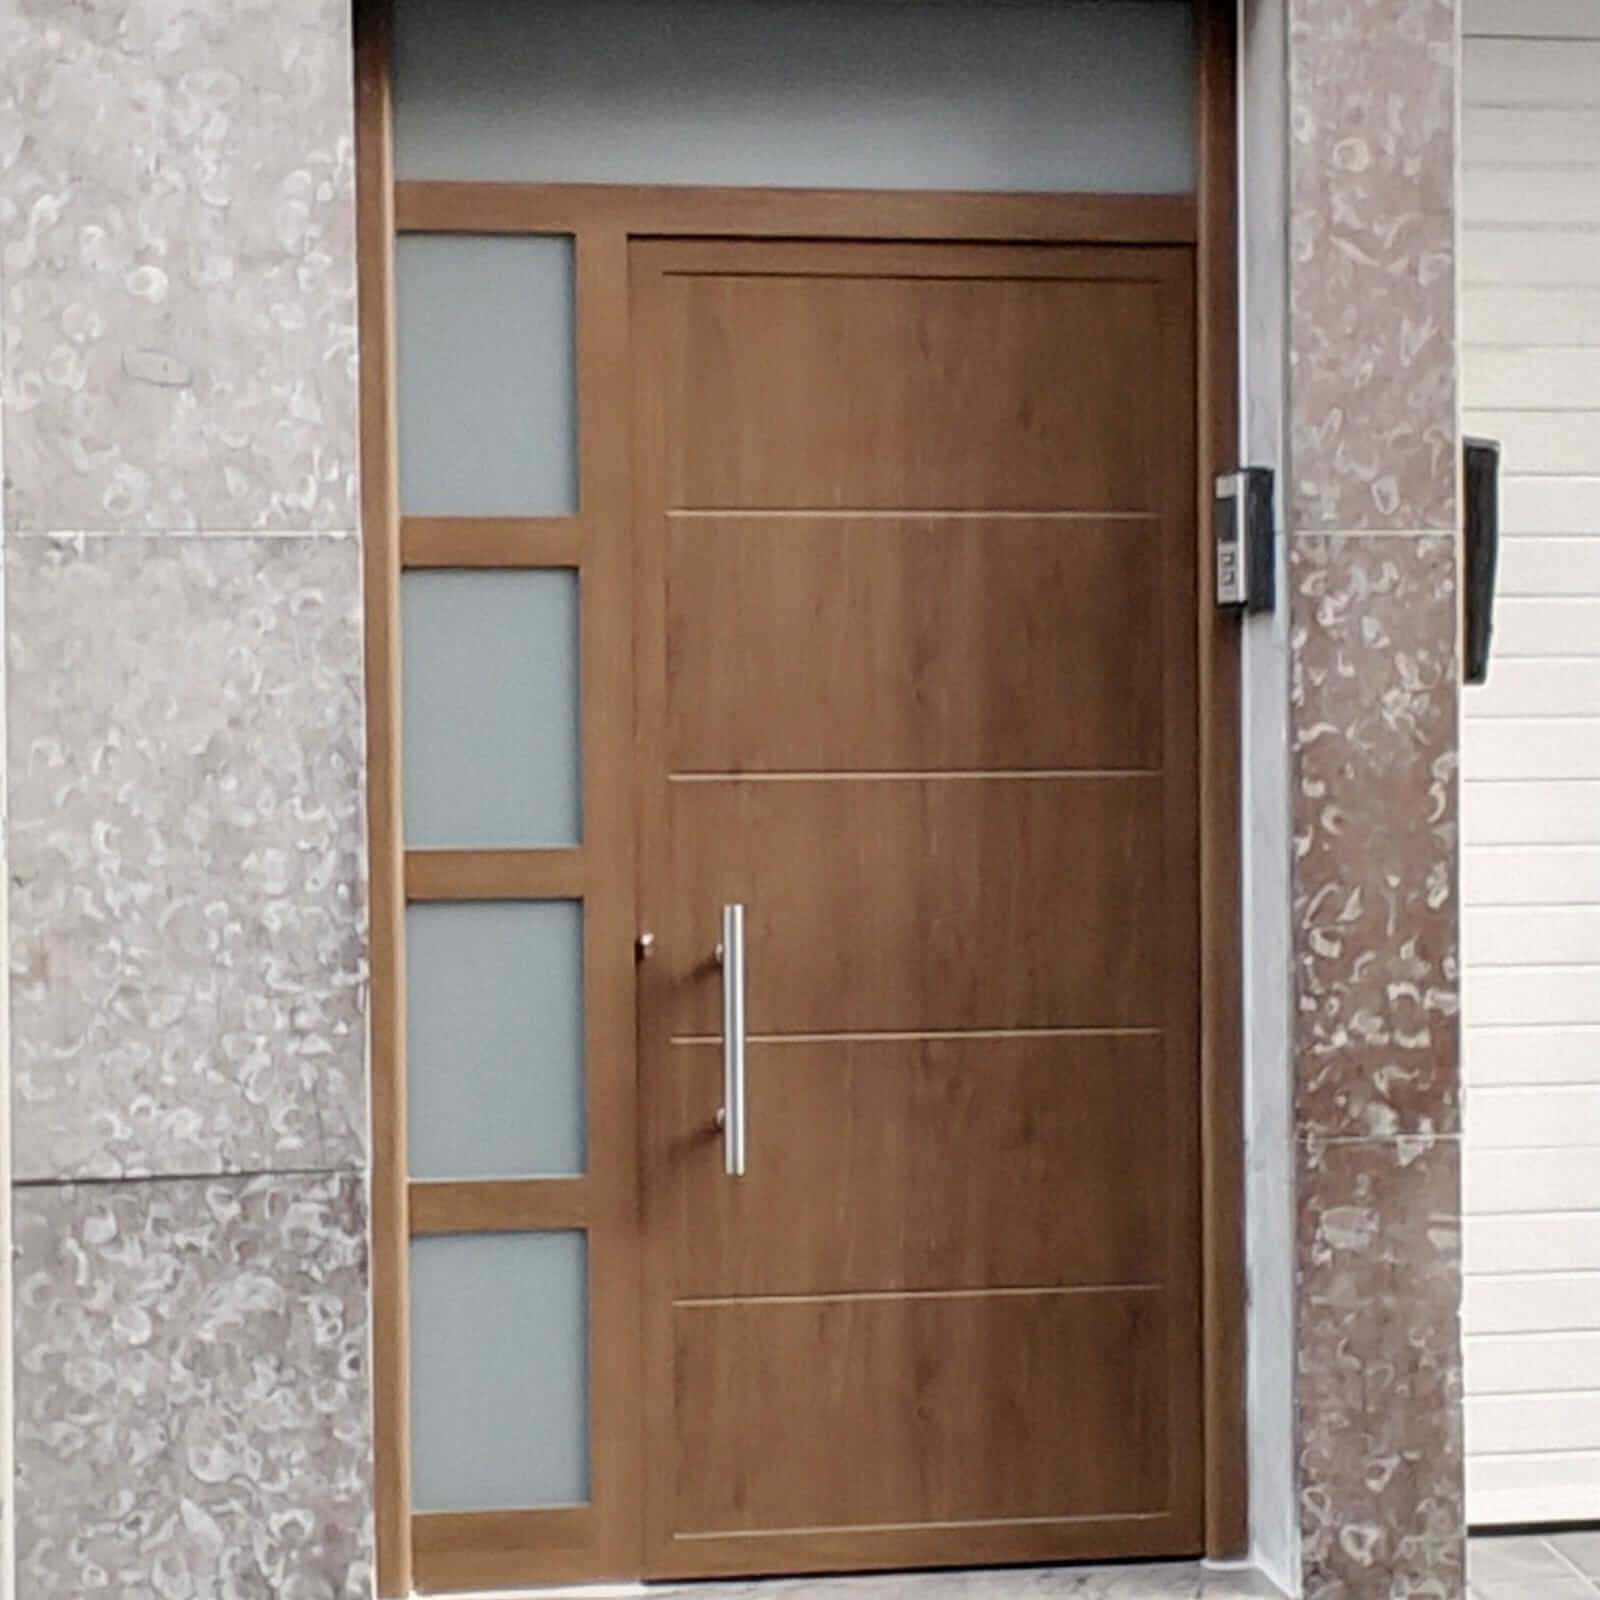 Puerta de entrada a vivienda de madera color roble